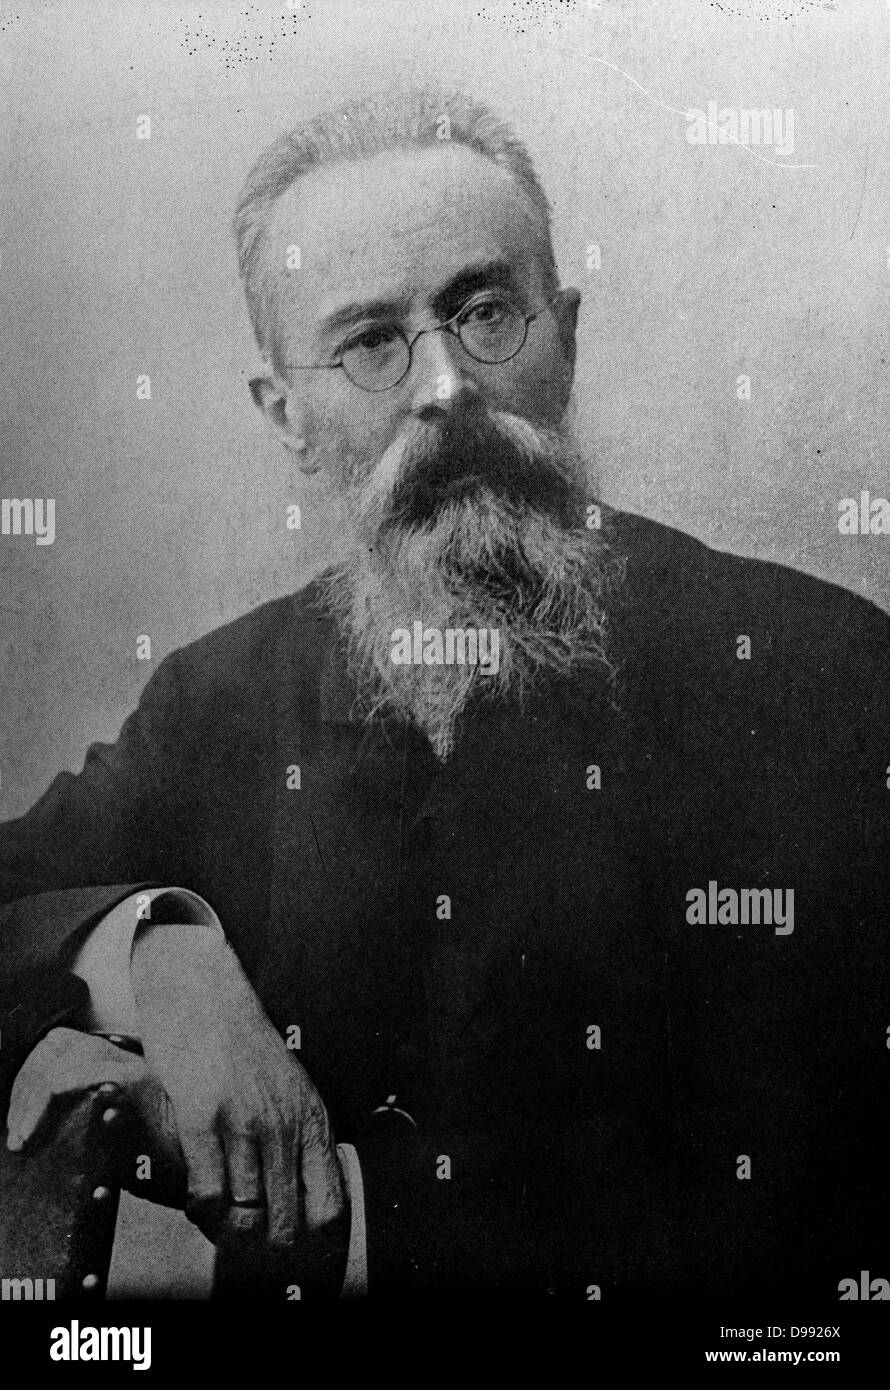 Nikolai Andreyevich Rimsky-Korsakov (1844-1908) Il compositore russo, un maestro di orchestrazione. Un membro dei Cinque (Balakirev, Mussorgsky, Cui, Borodin ). Testa e spalle immagine. Foto Stock